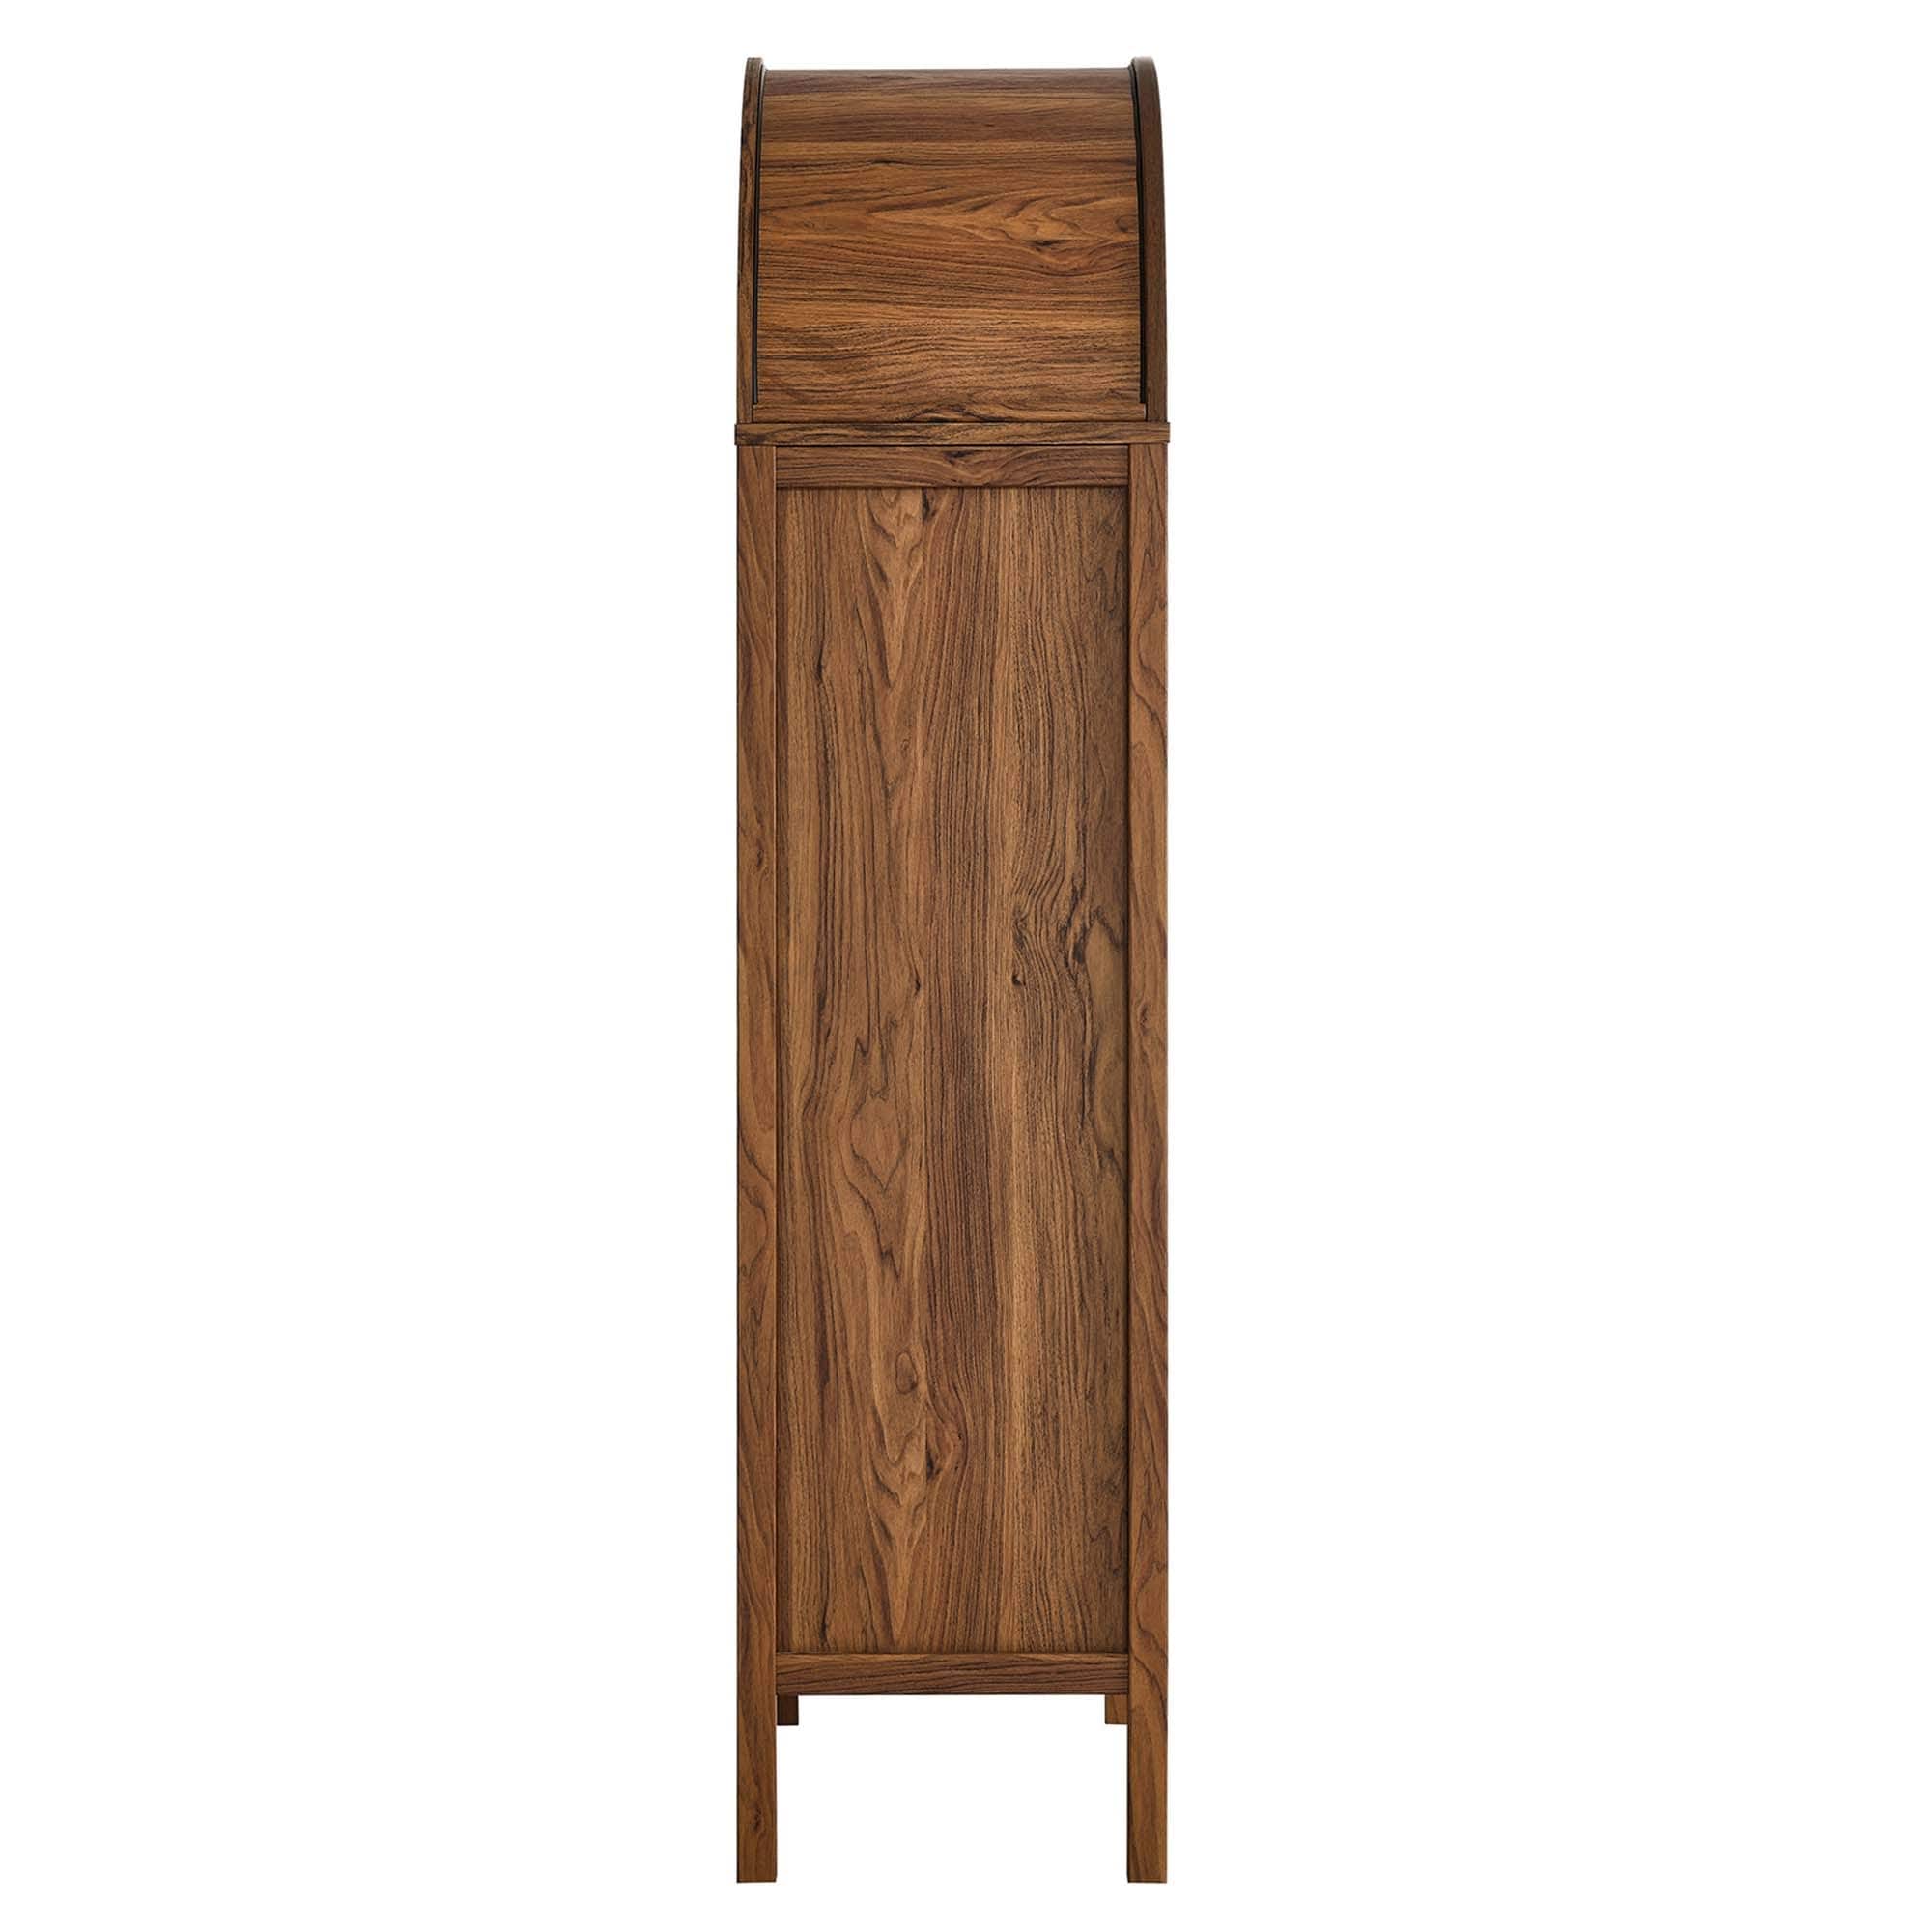 EEI6638OAK by Modway - Tessa Tall Storage Display Cabinet - Oak